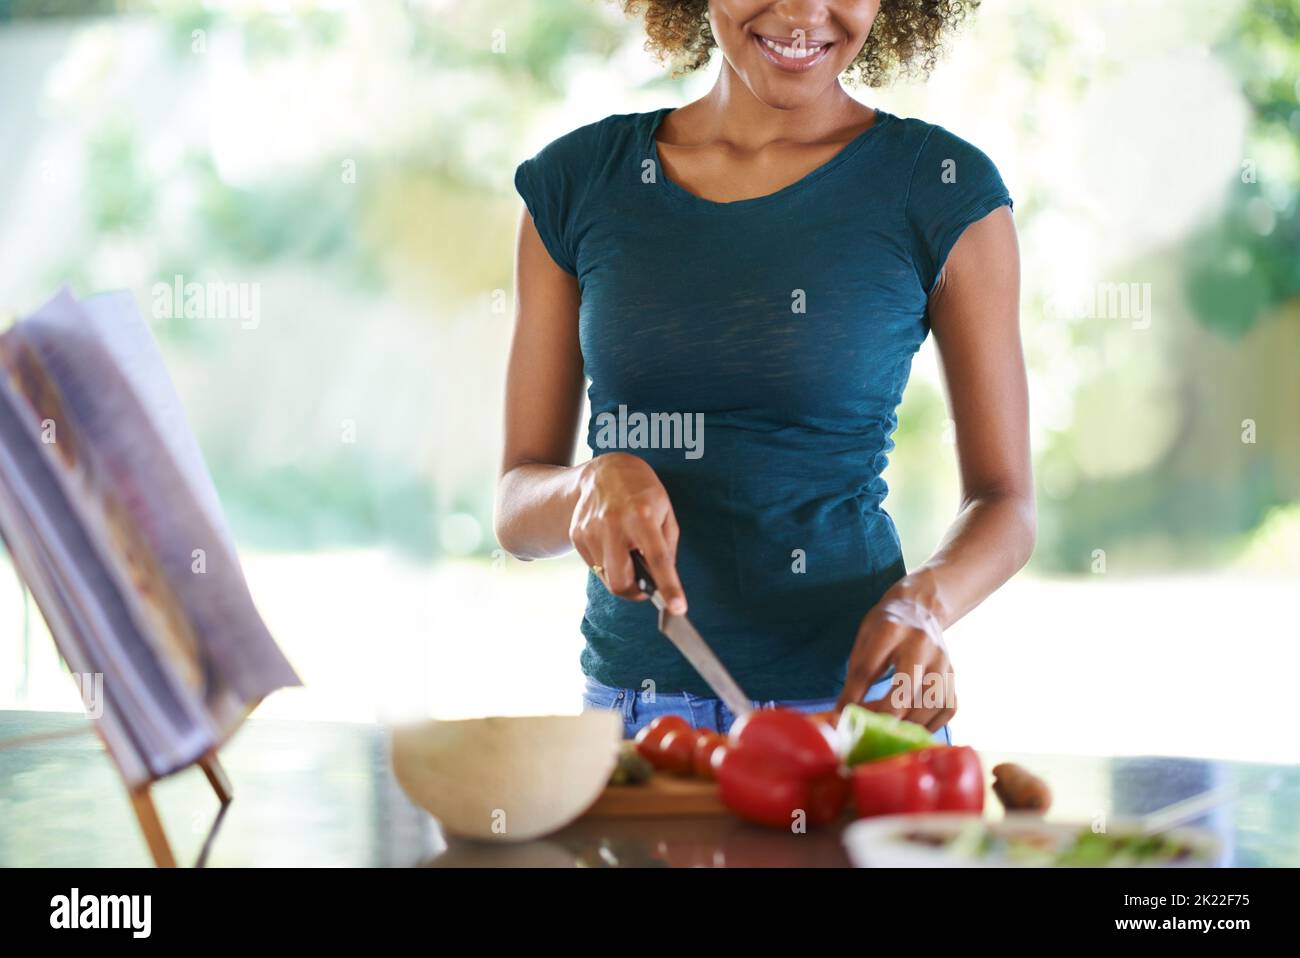 Ein köstliches Gericht in der Küche zubereiten. Eine junge Frau, die aus einem Rezeptbuch kocht. Stockfoto